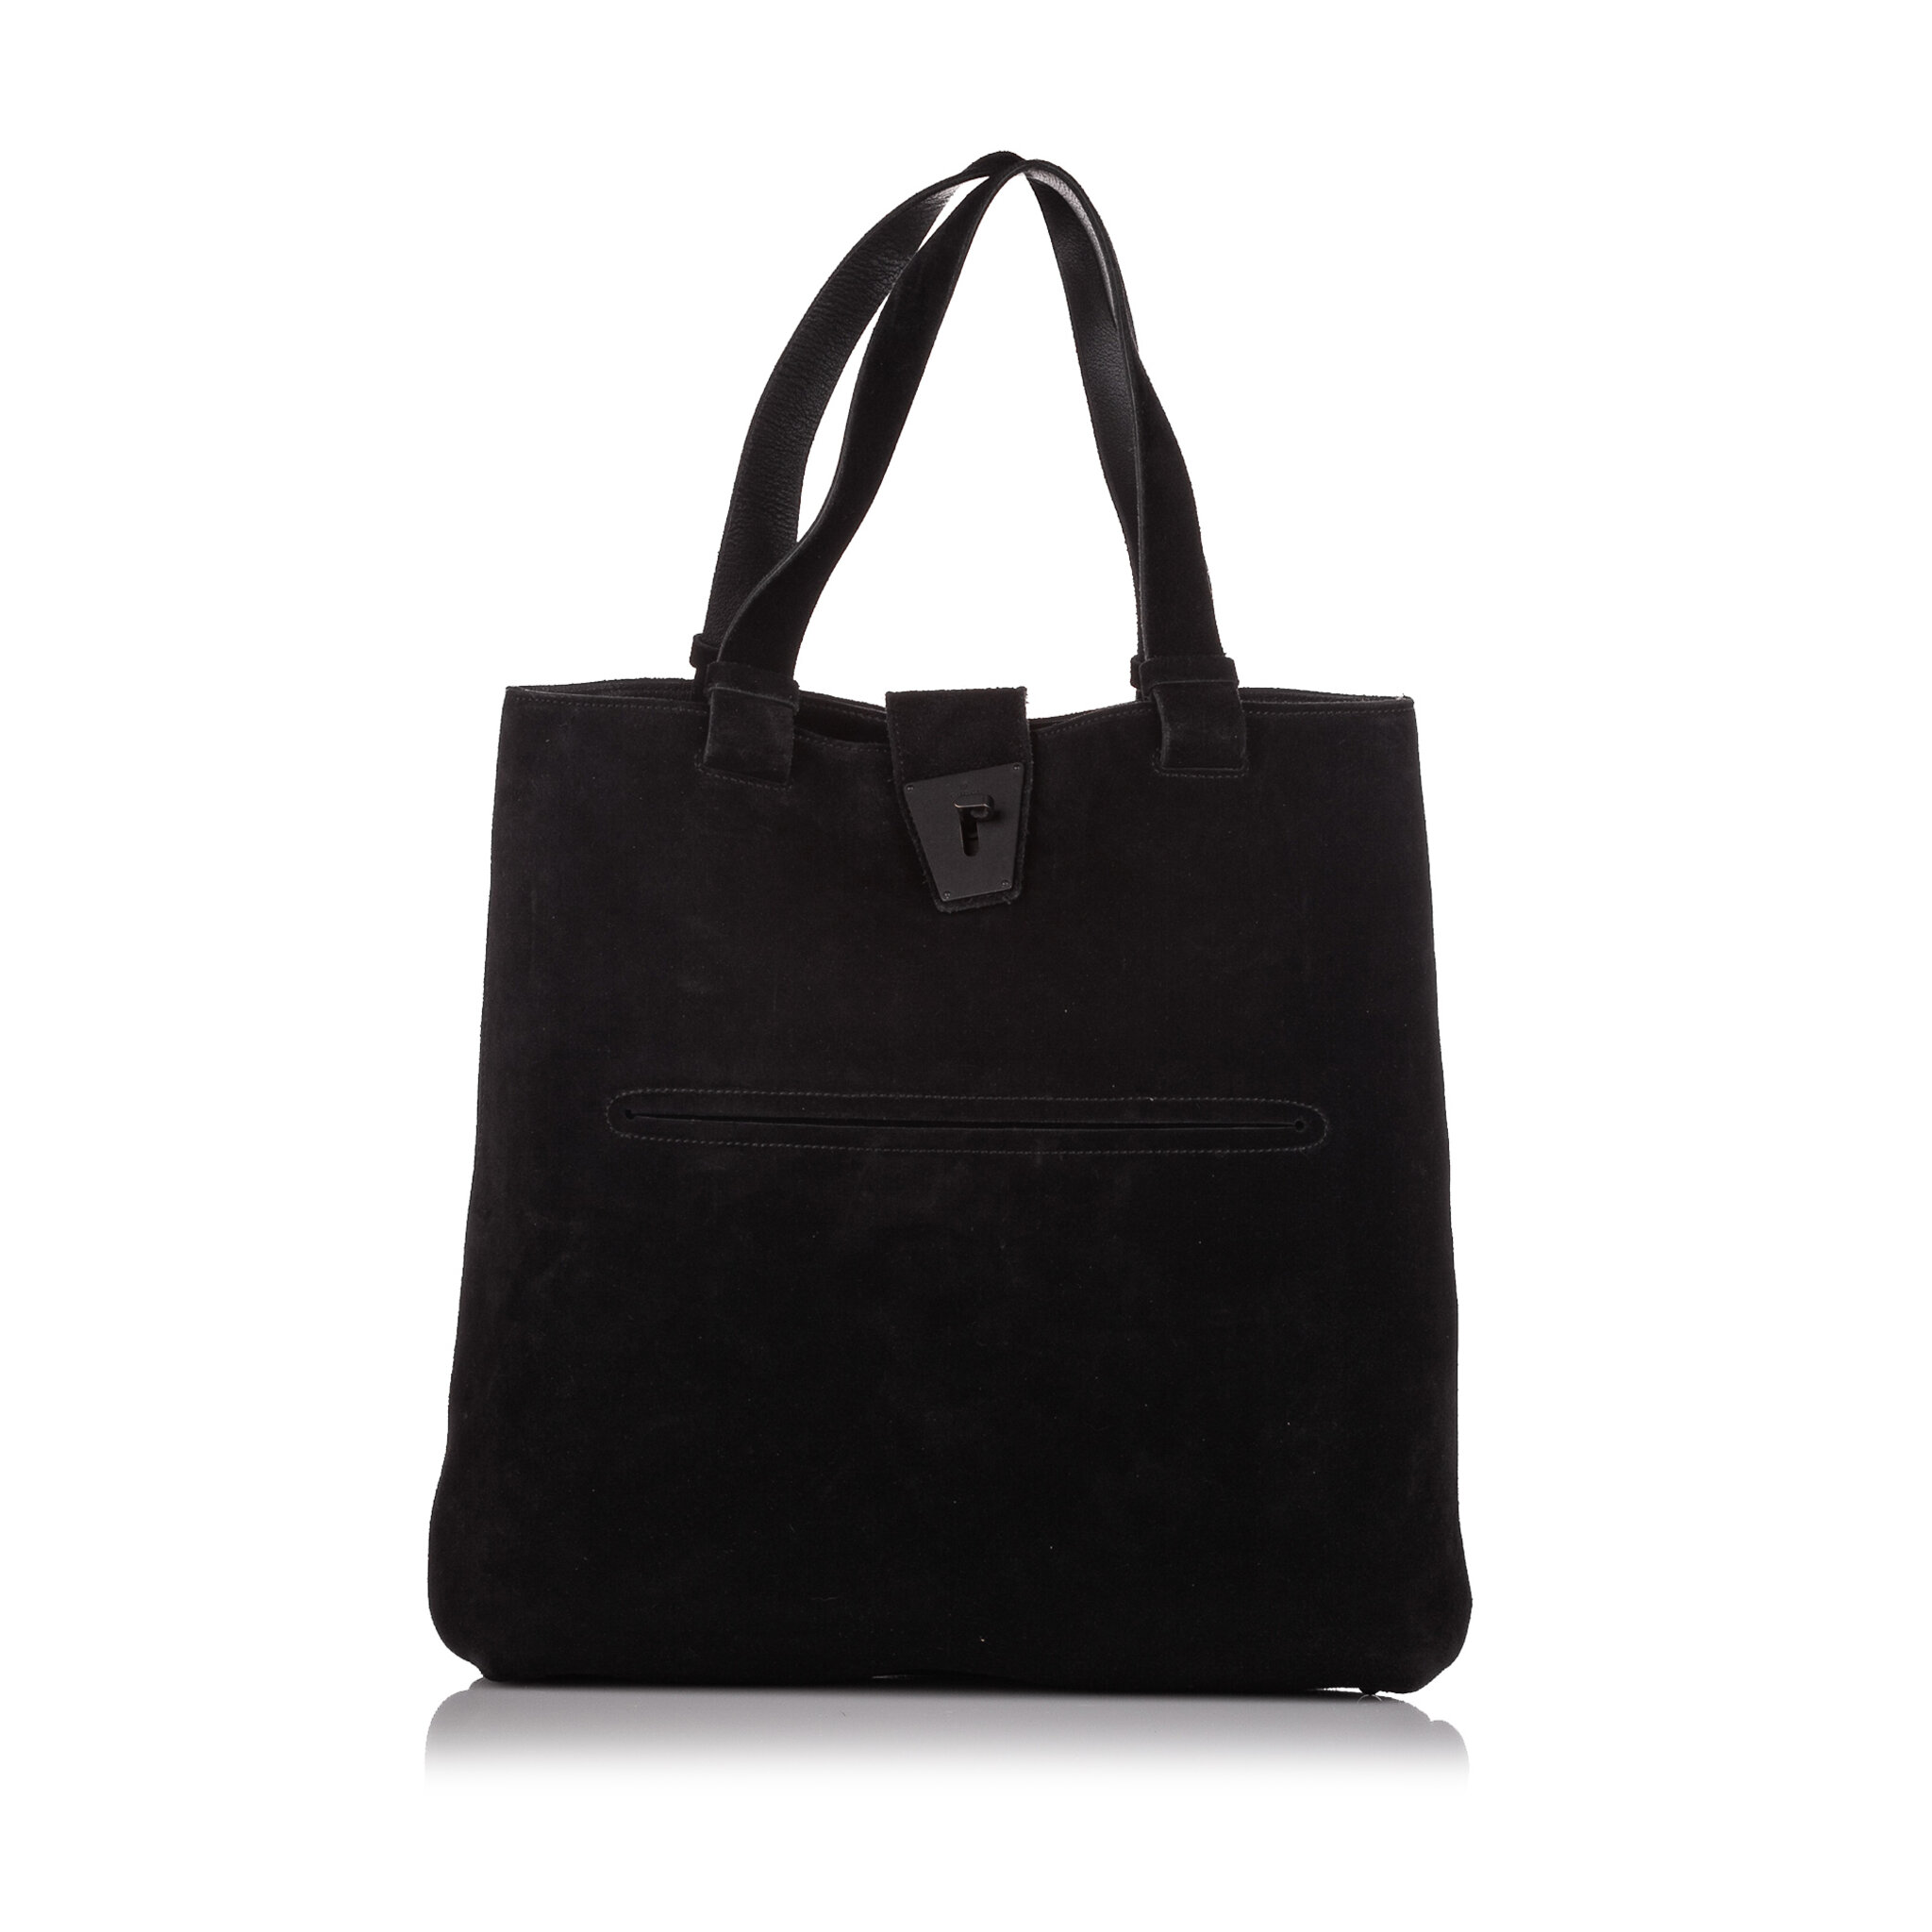 Gucci Velvet Tote Bag, ONESIZE, black